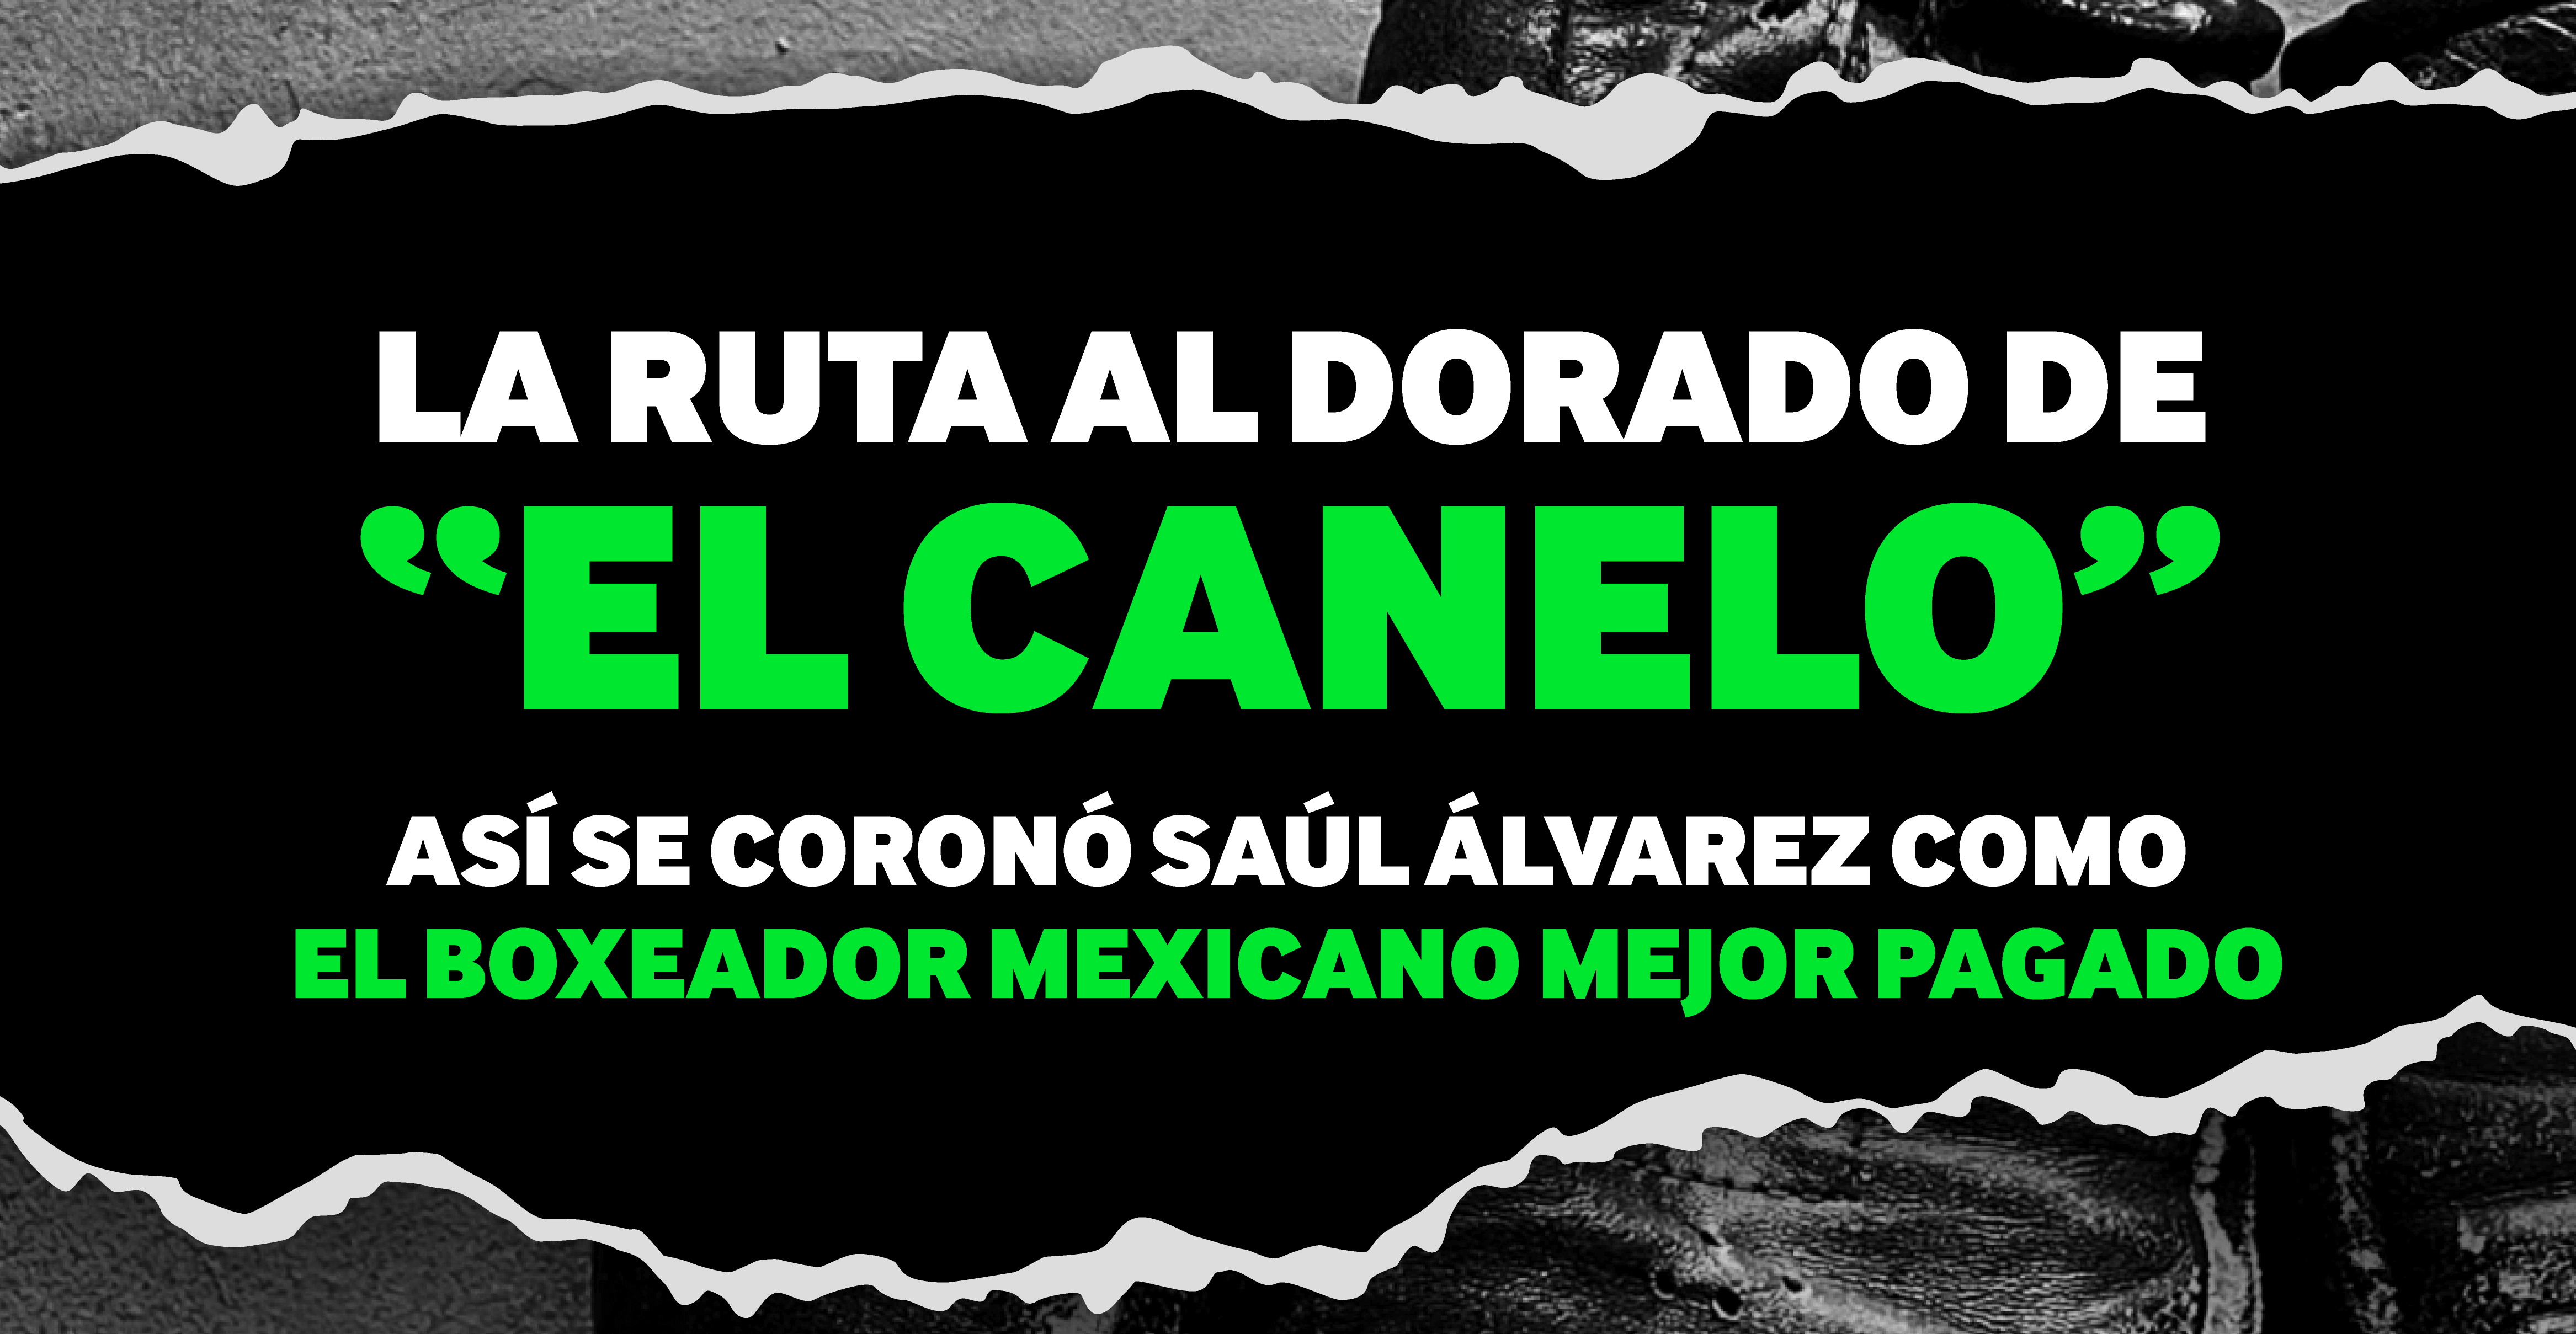 Saúl “El Canelo” Álvarez es el boxeador mexicano mejor pagado